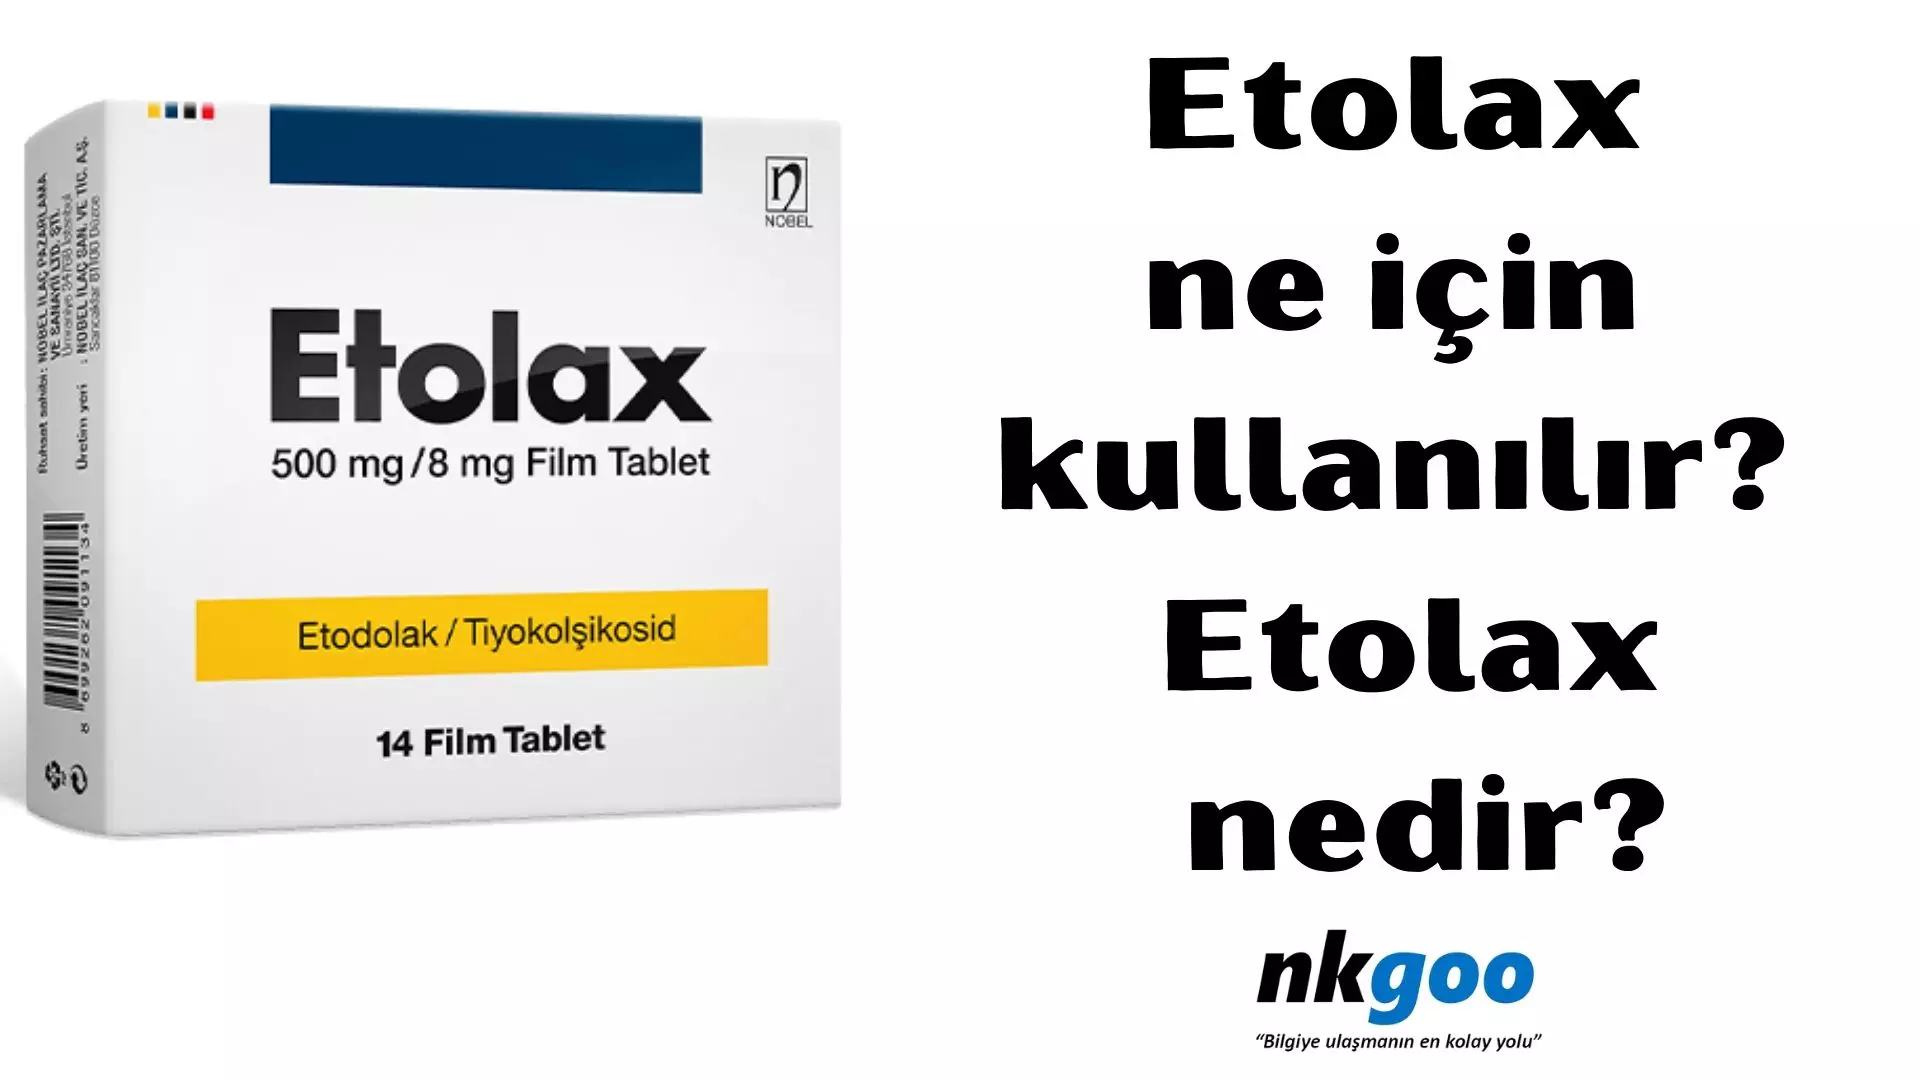 Etolax ne için kullanılır? Etolax nedir?